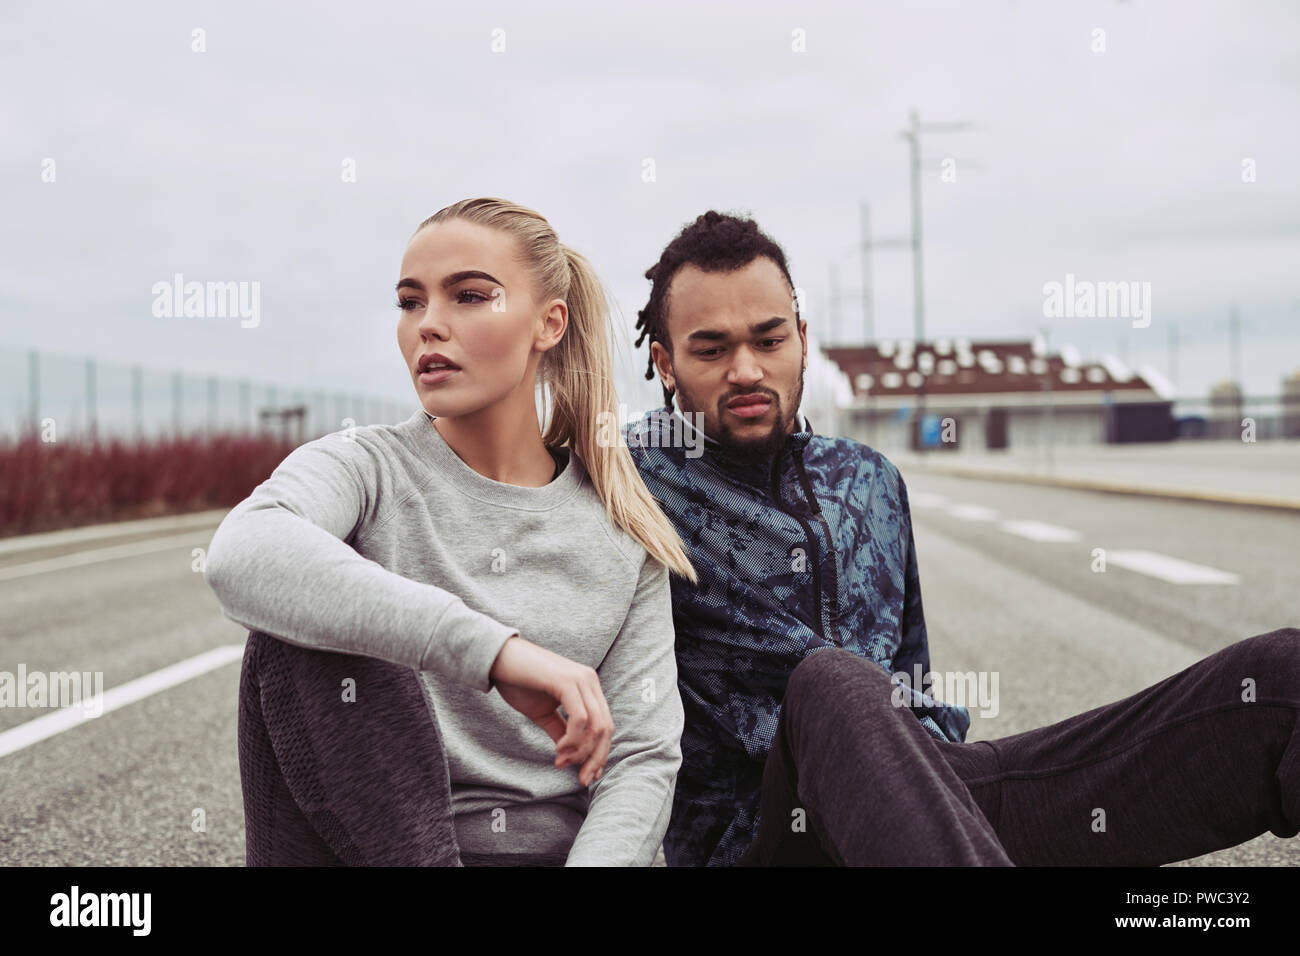 Diversos pareja joven sentada sobre una carretera en recuperar el aliento, mientras que para correr juntos en un día nublado Foto de stock